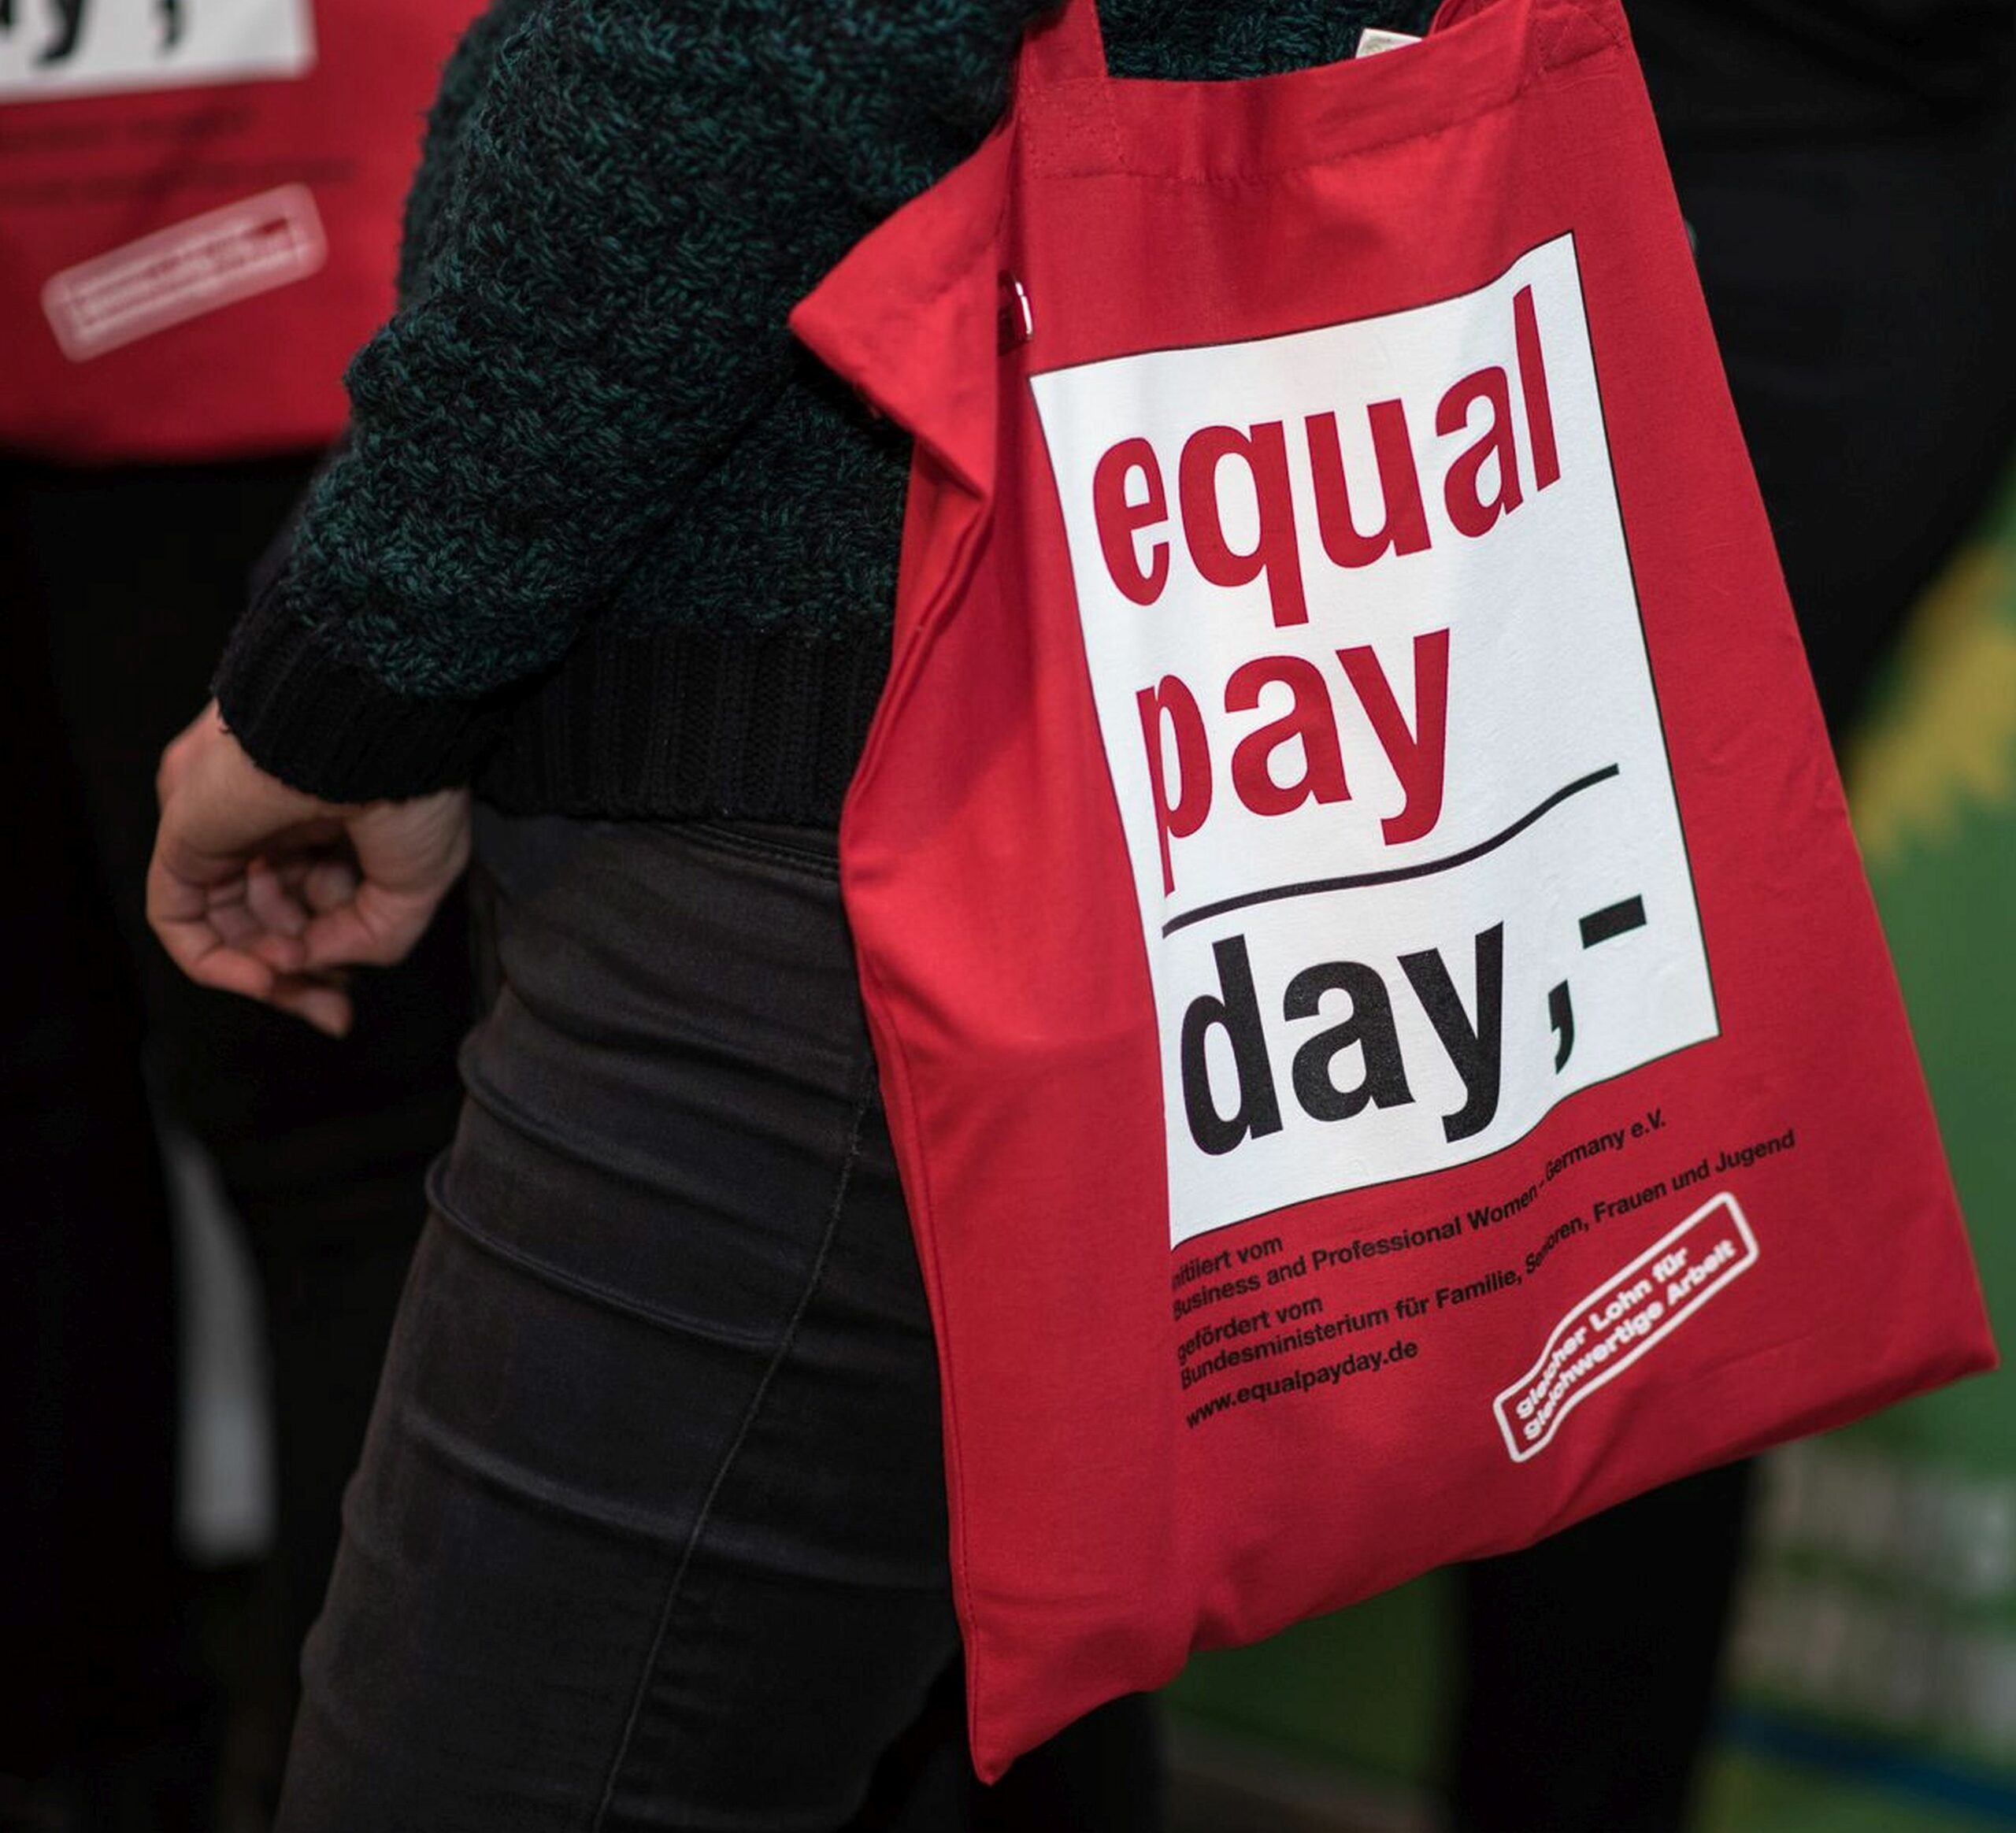 PM Gleichstellung 003 - Foto zum Equal Pay Day